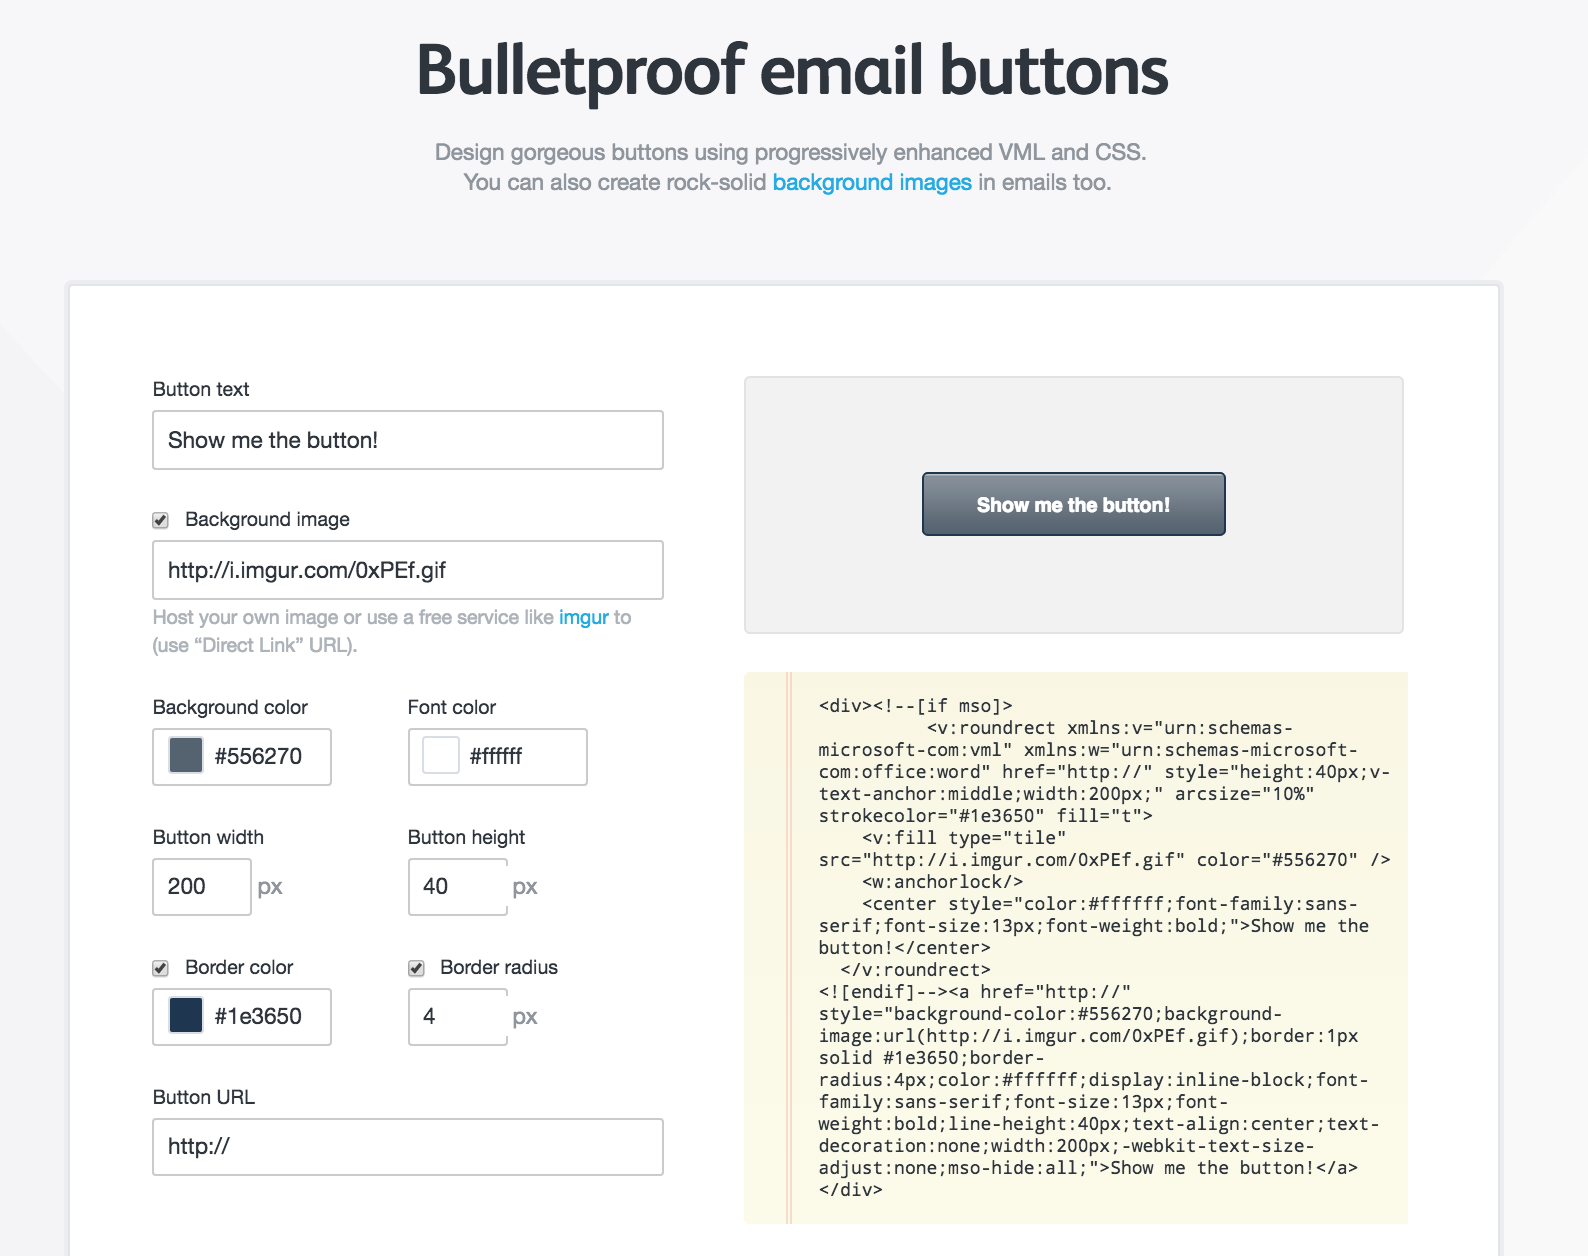 Bulletproof buttons